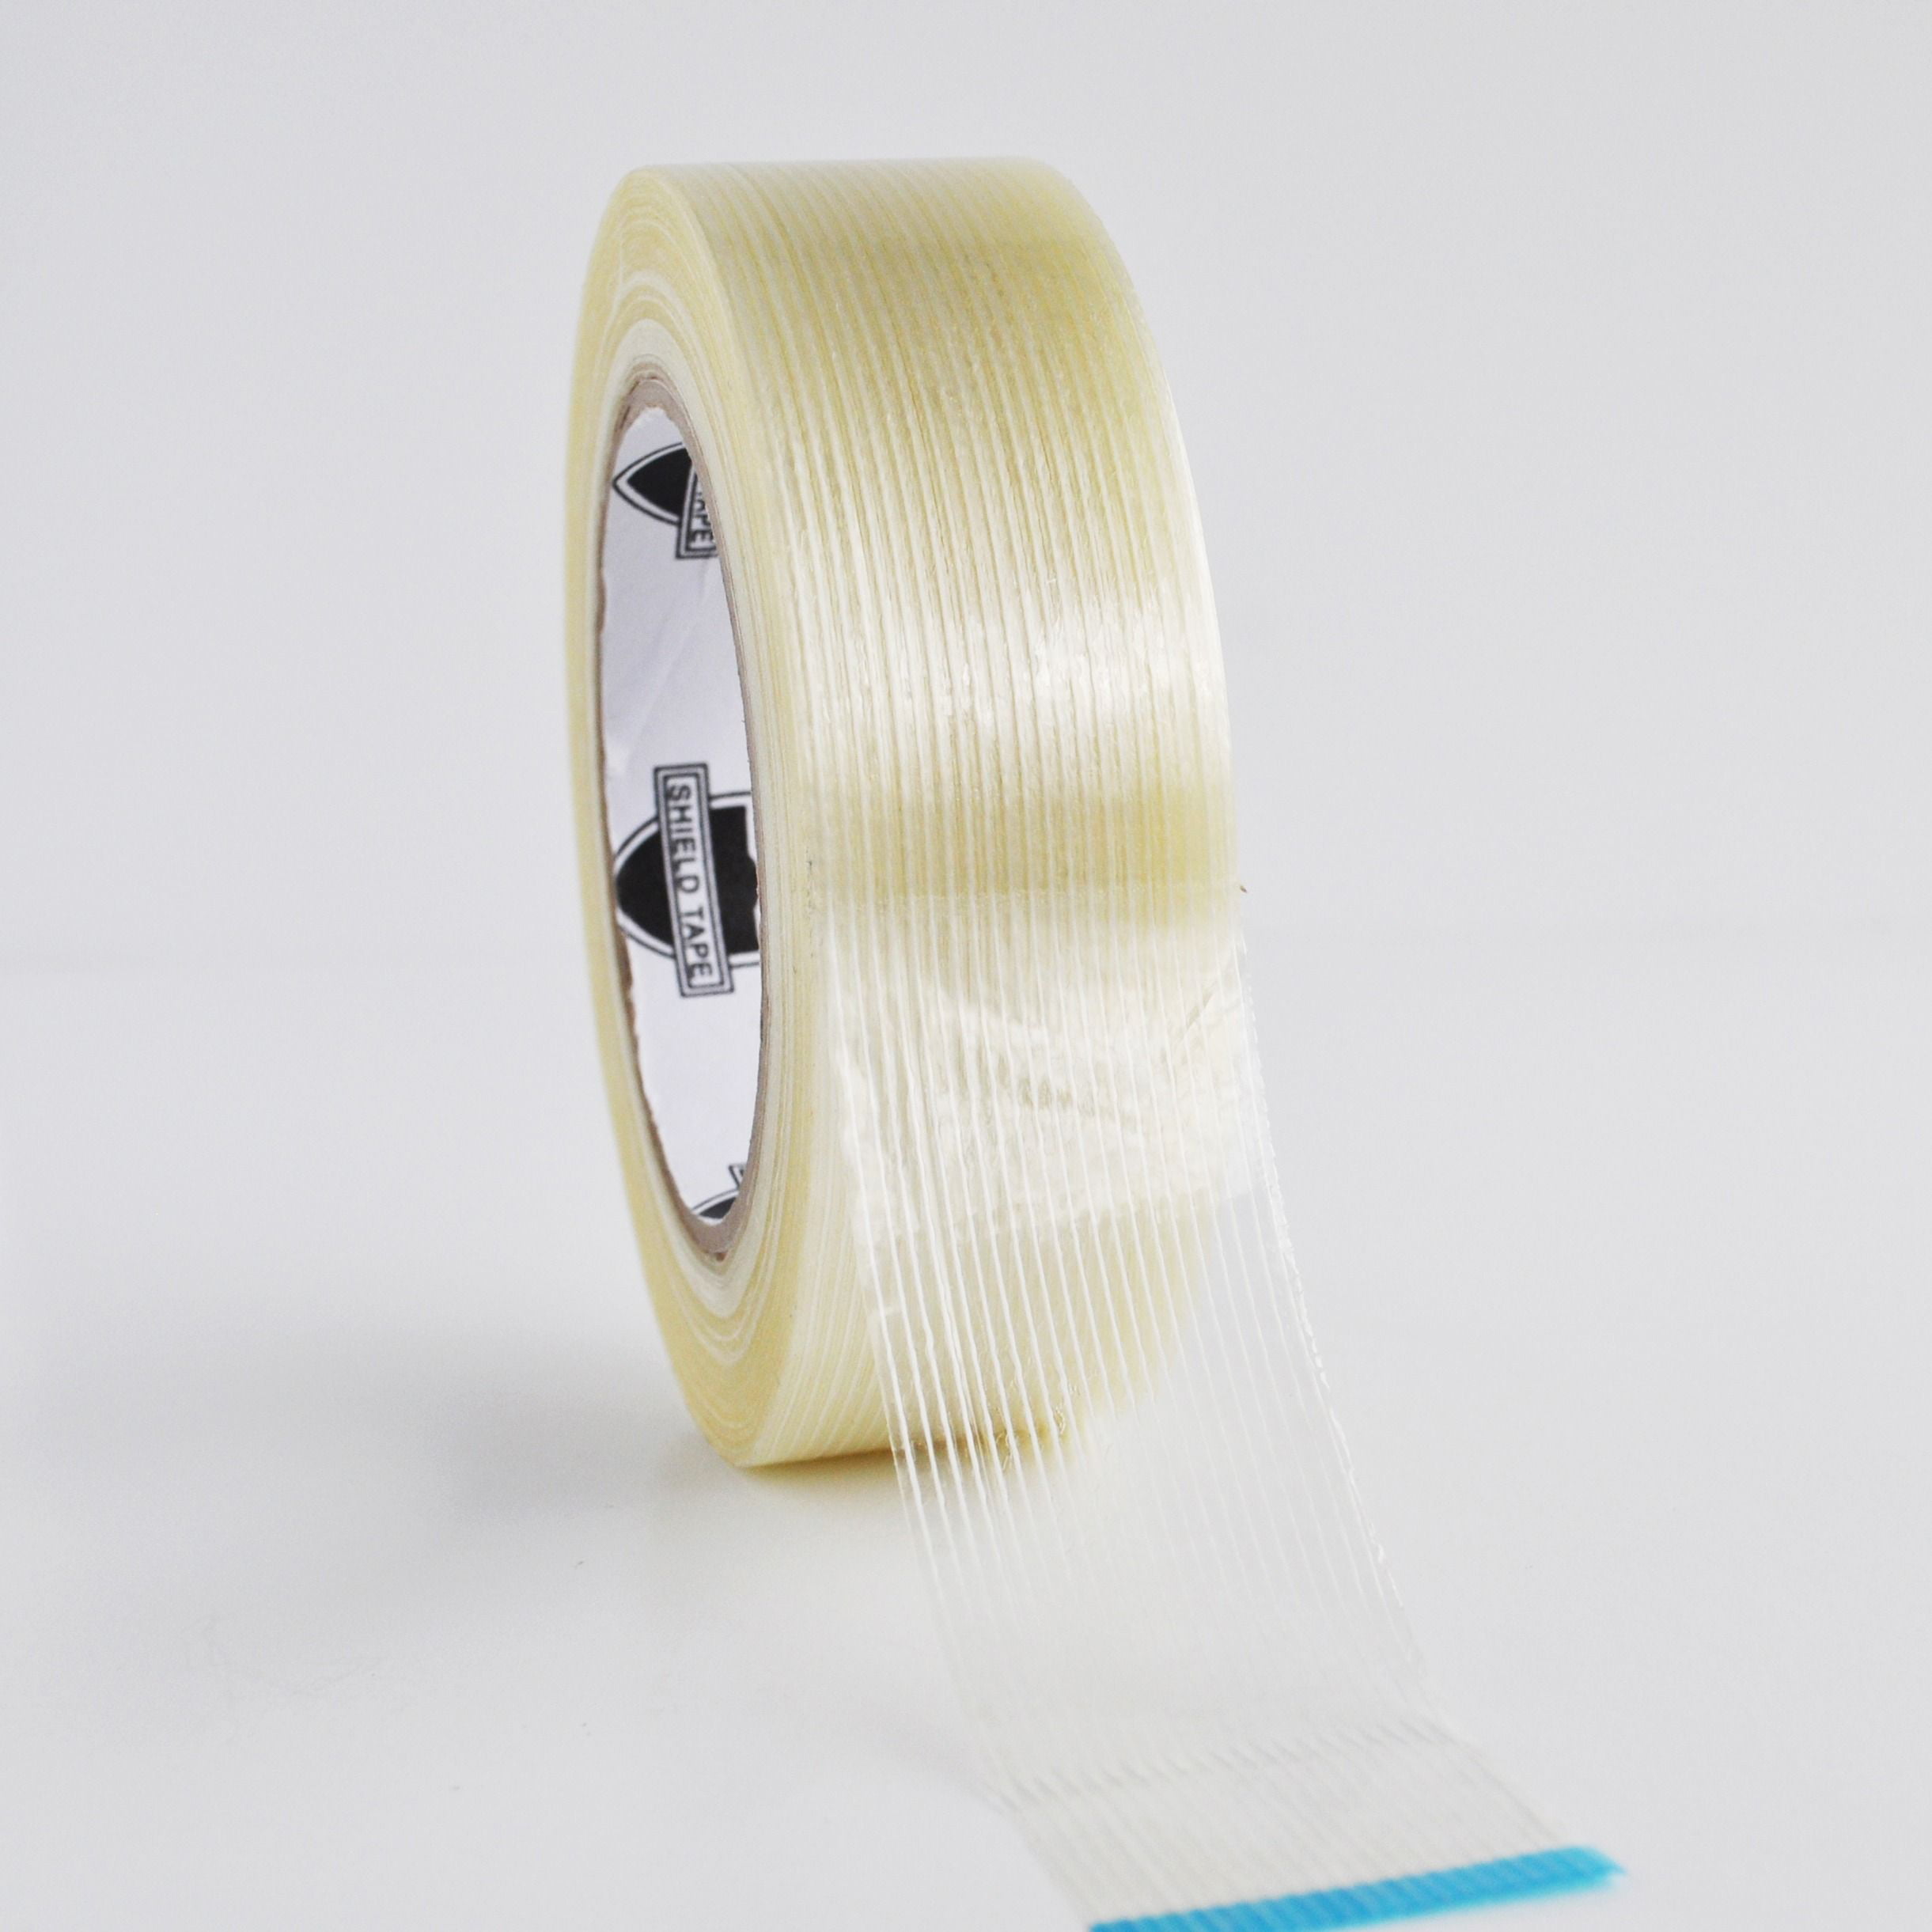 2 Inch x 60 Yard Filament Reinforced Strapping Fiberglass Tape 4 Mil 240 Rolls 